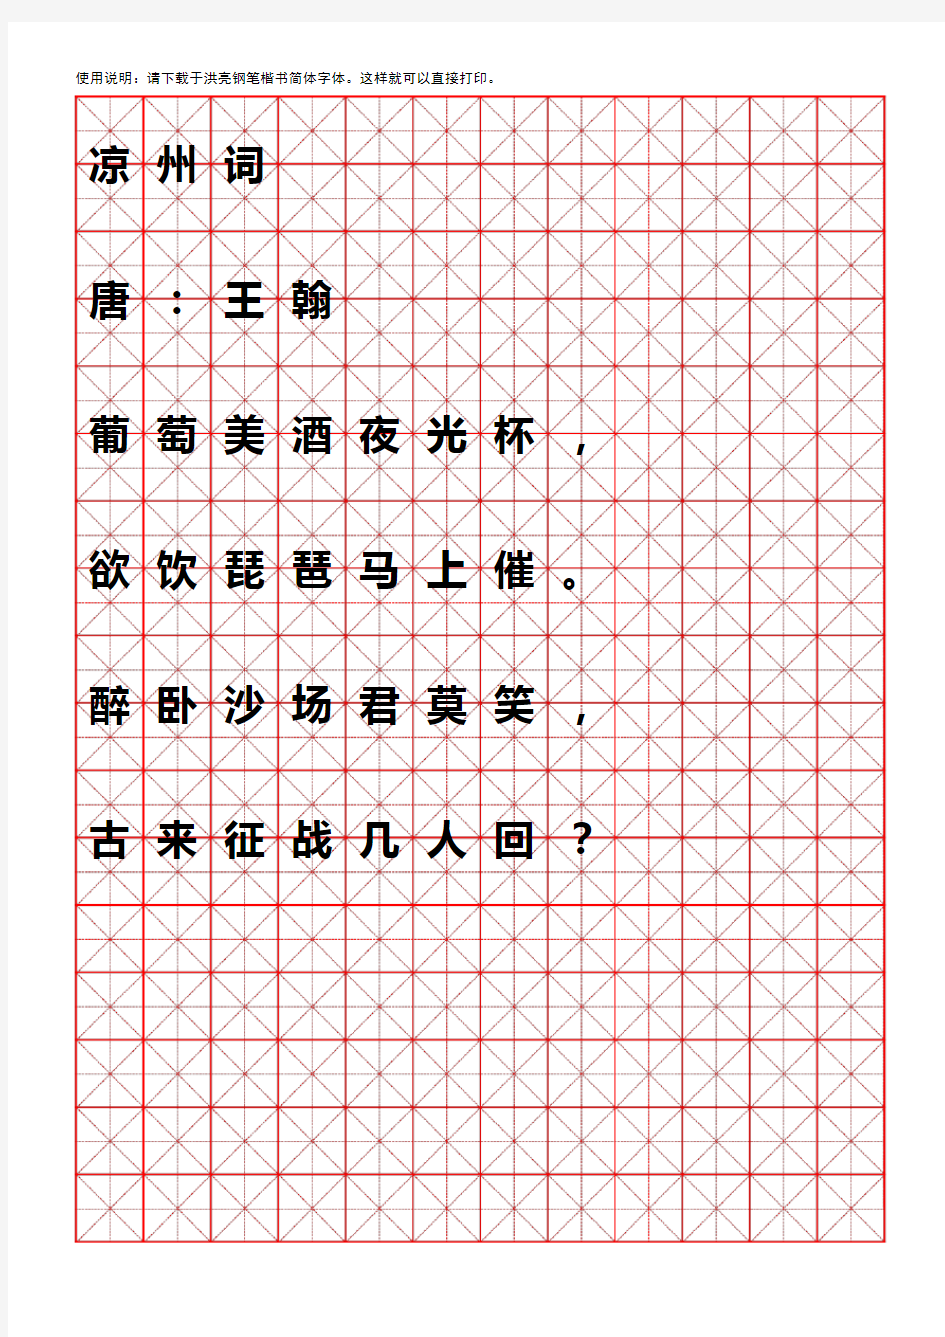 小学生,A4版,米字格,硬笔书法纸模板(可随意打字)